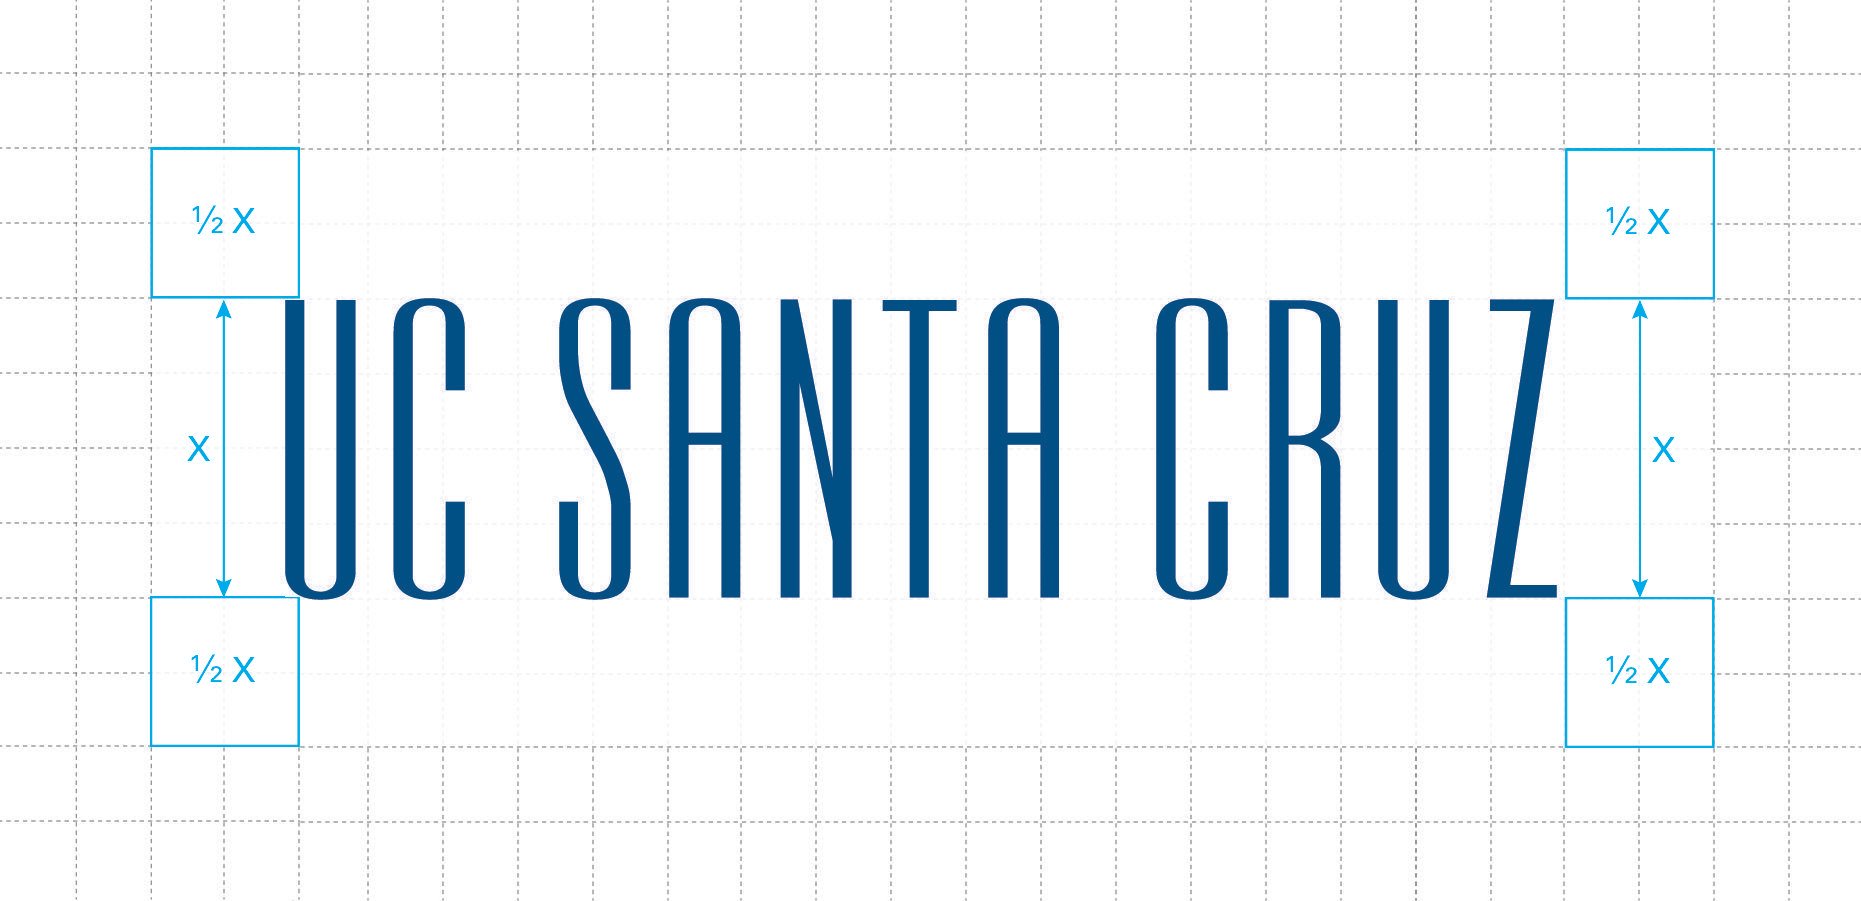 UCSC Logo - Logo Usage – Communications & Marketing